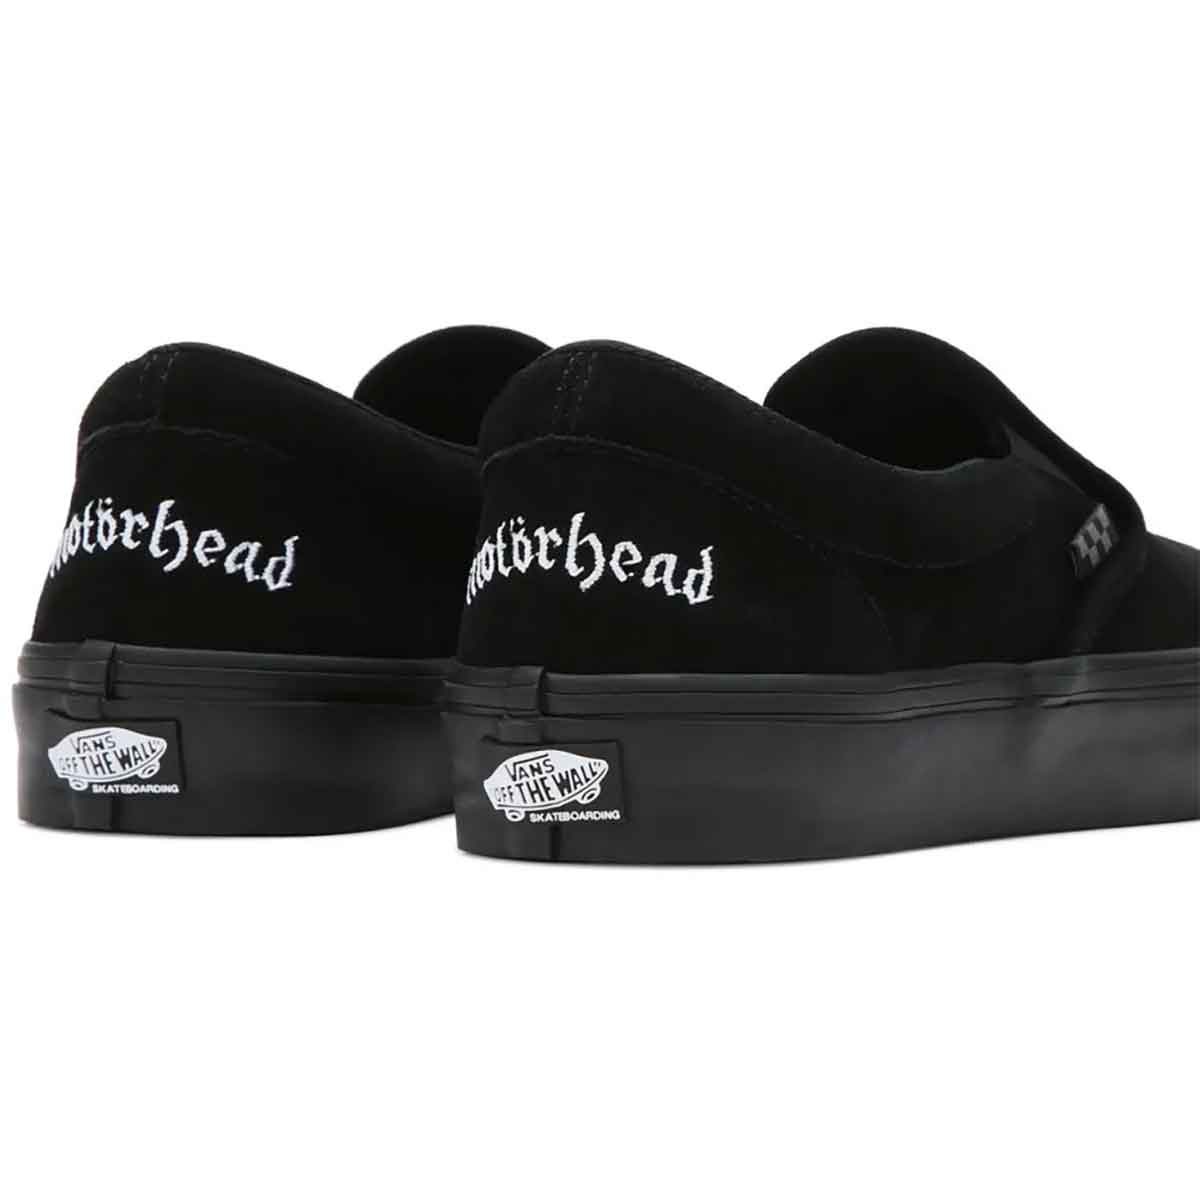 Vans Skate X Motorhead X Rowley Slip On Shoes - Black